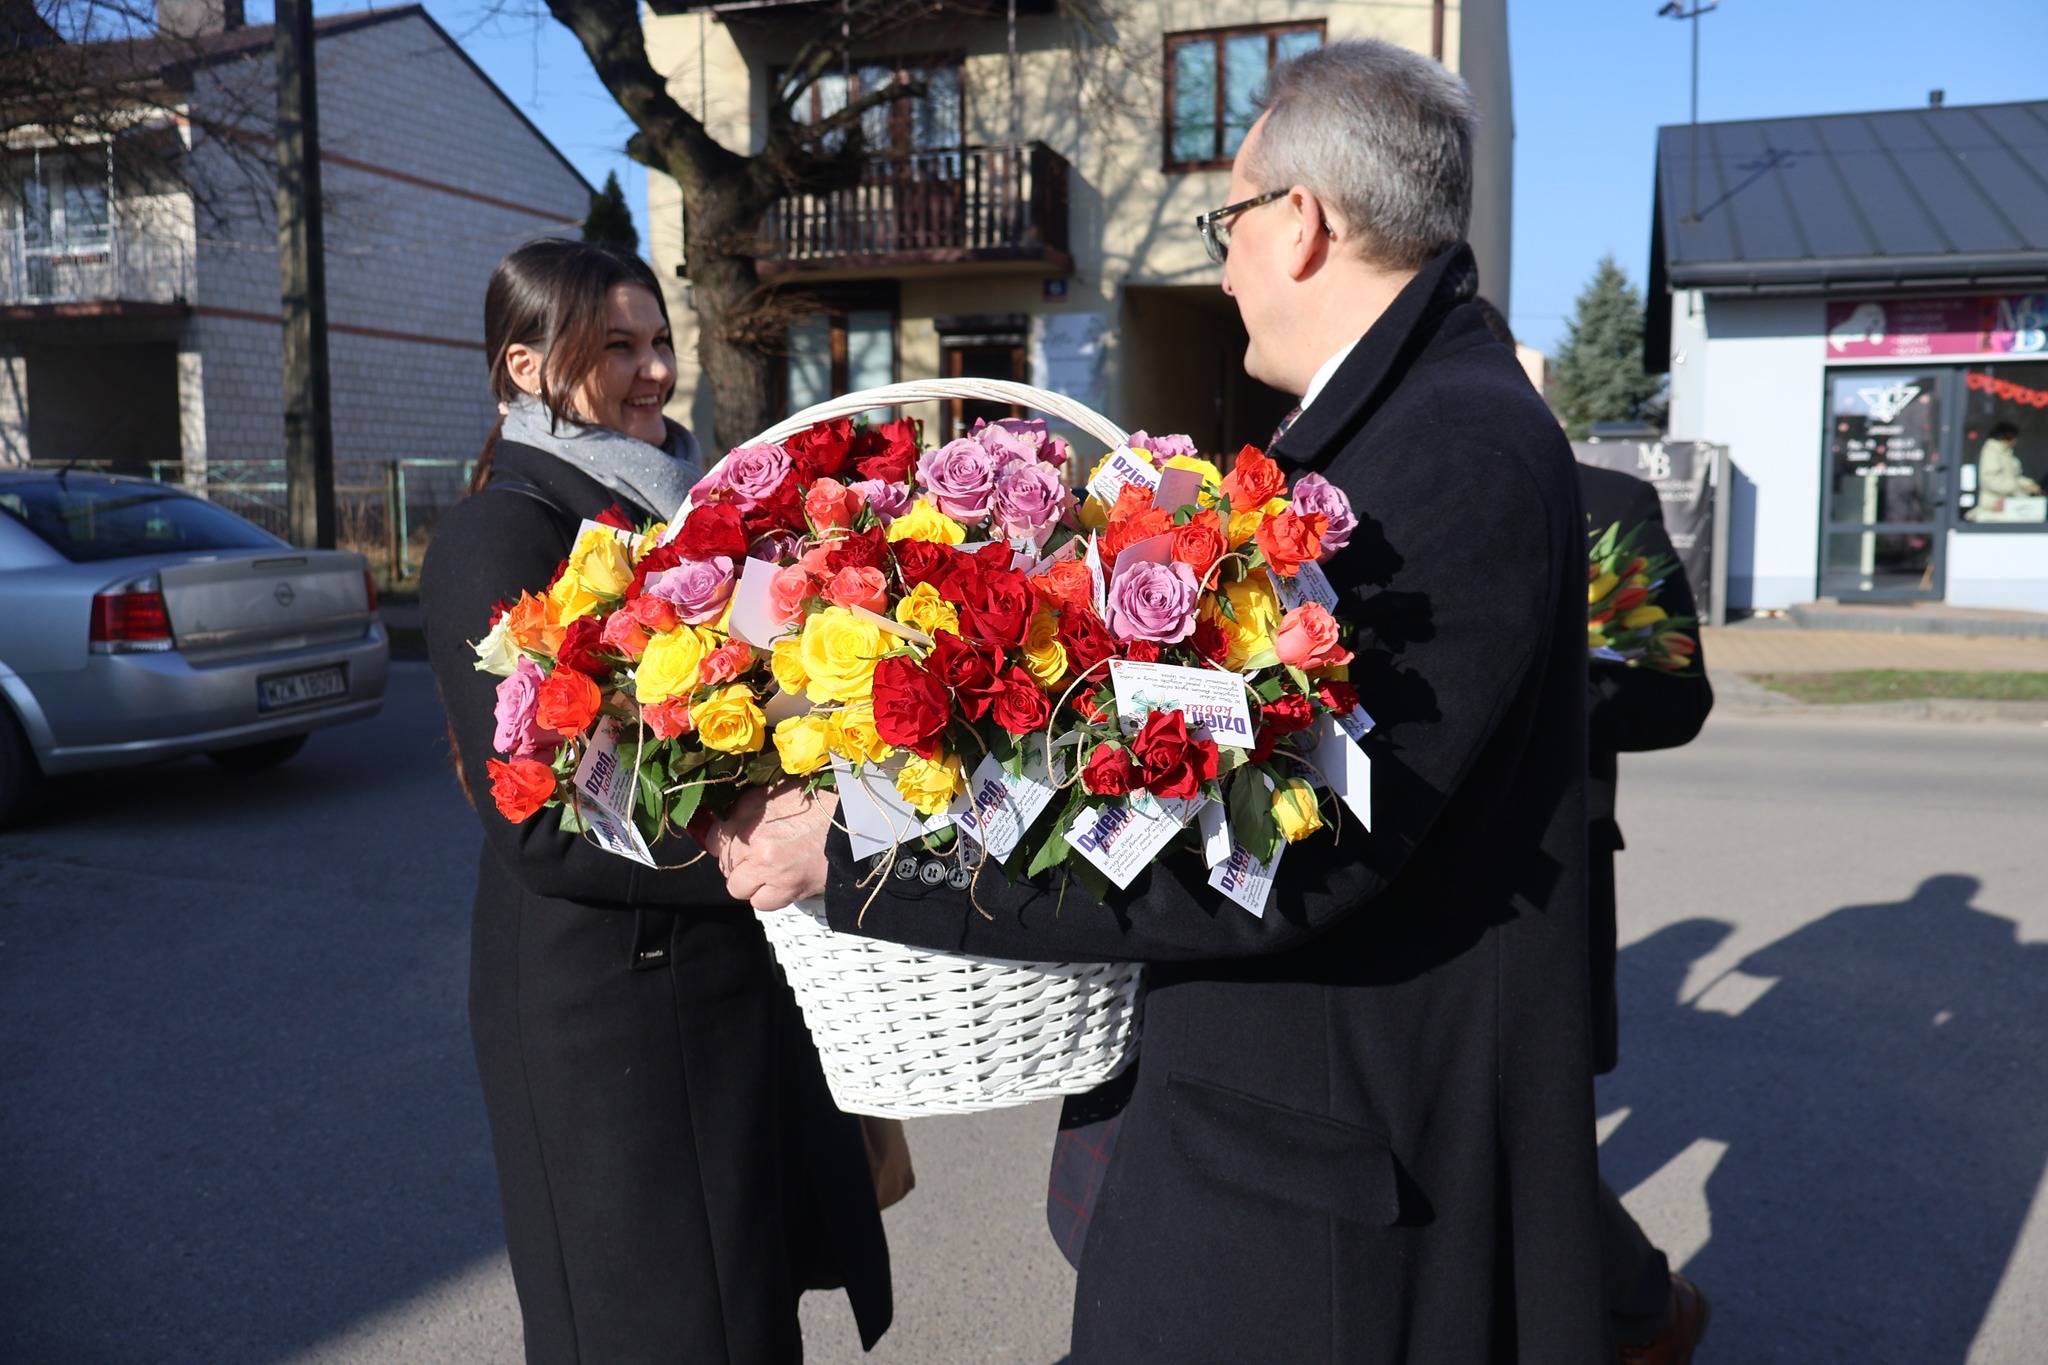 Burmistrz z koszem róż wręcza kwiat napotkanej na ulicy pani